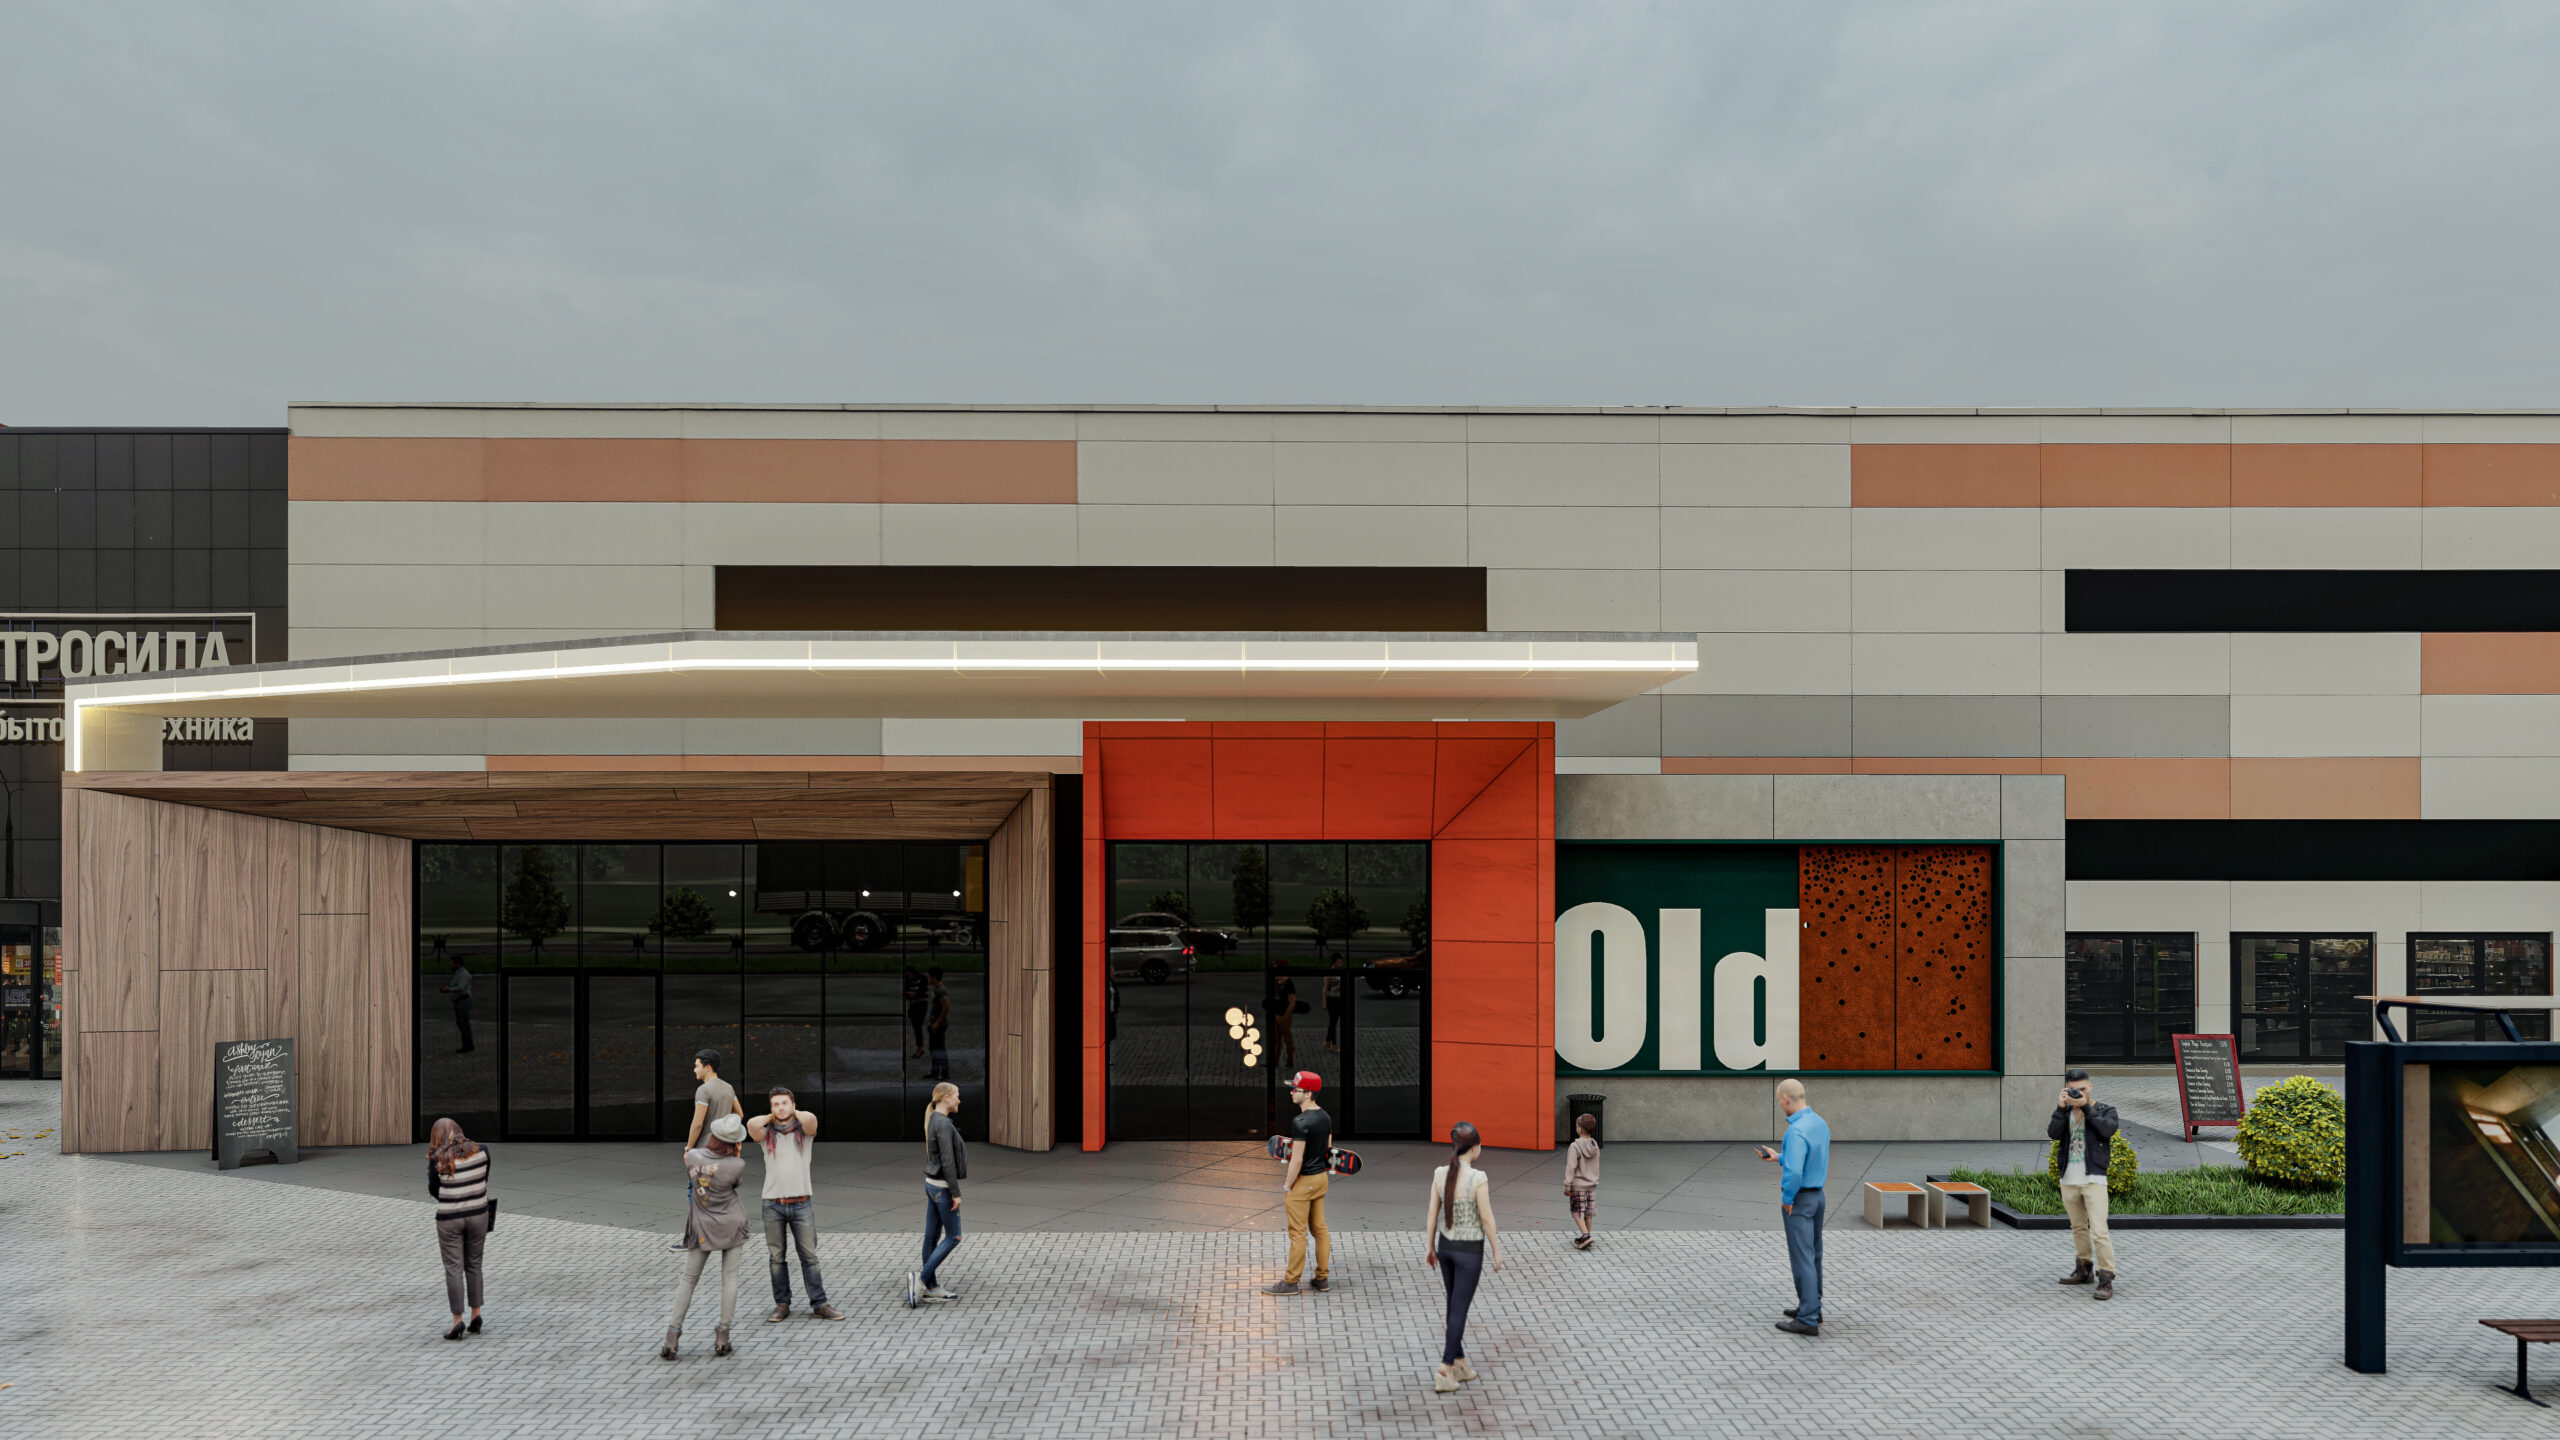 OldCity планирует расширяться: пристроят новые павильоны и веранды